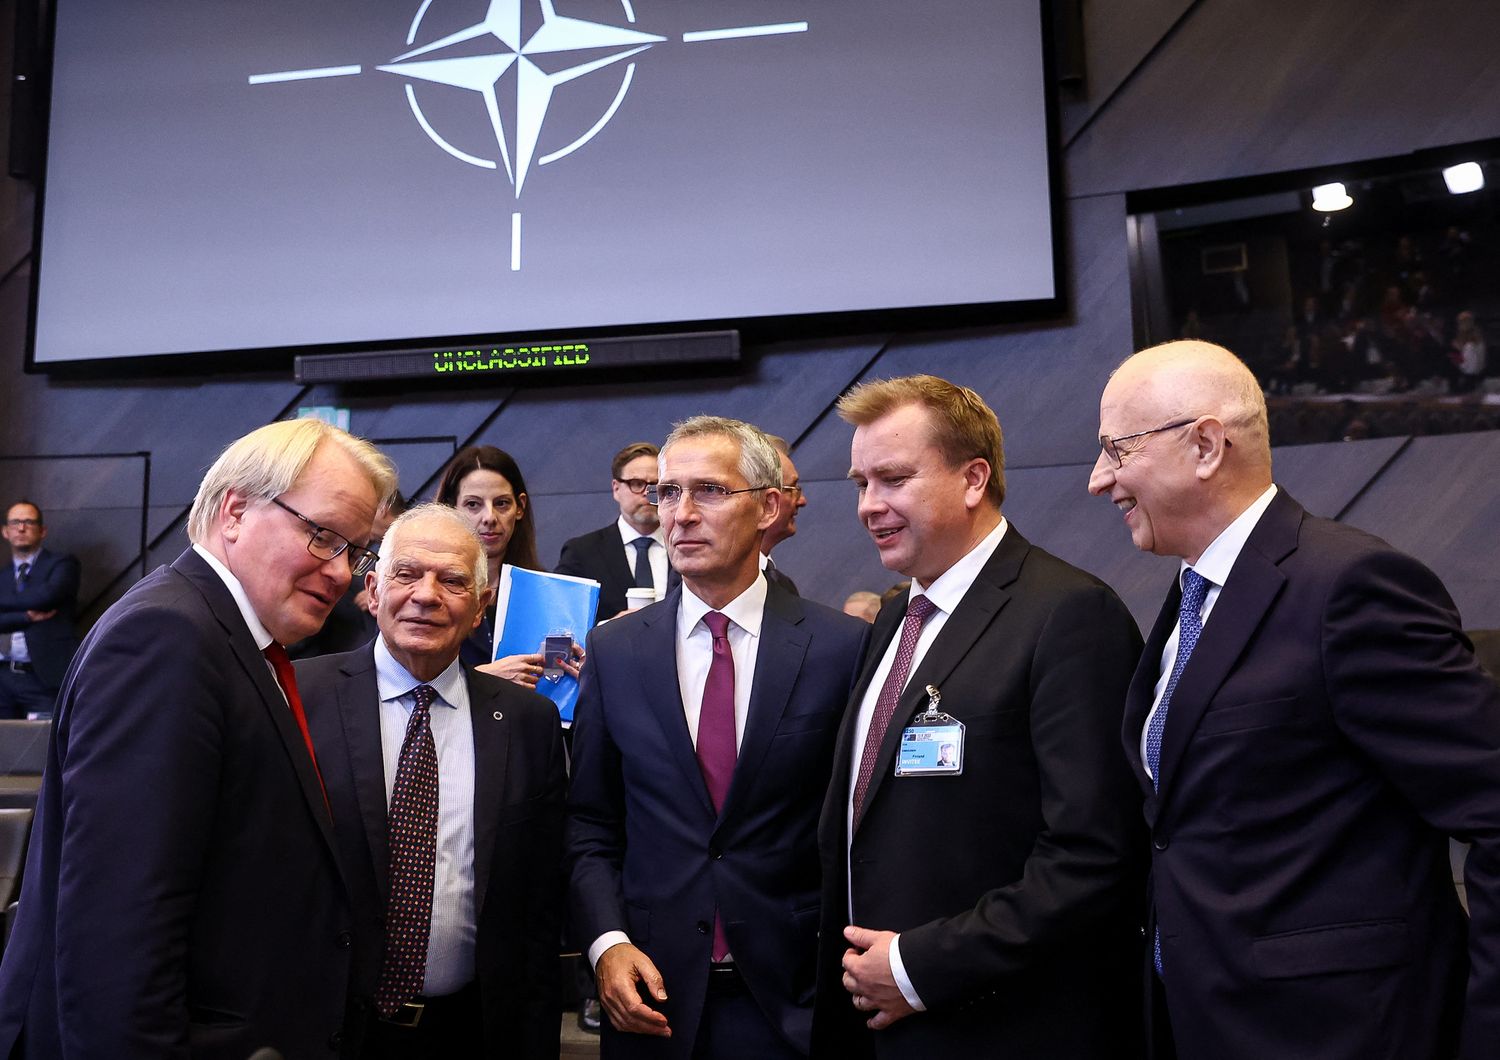 La riunione dei ministri della Difesa presso la sede della Nato&nbsp;